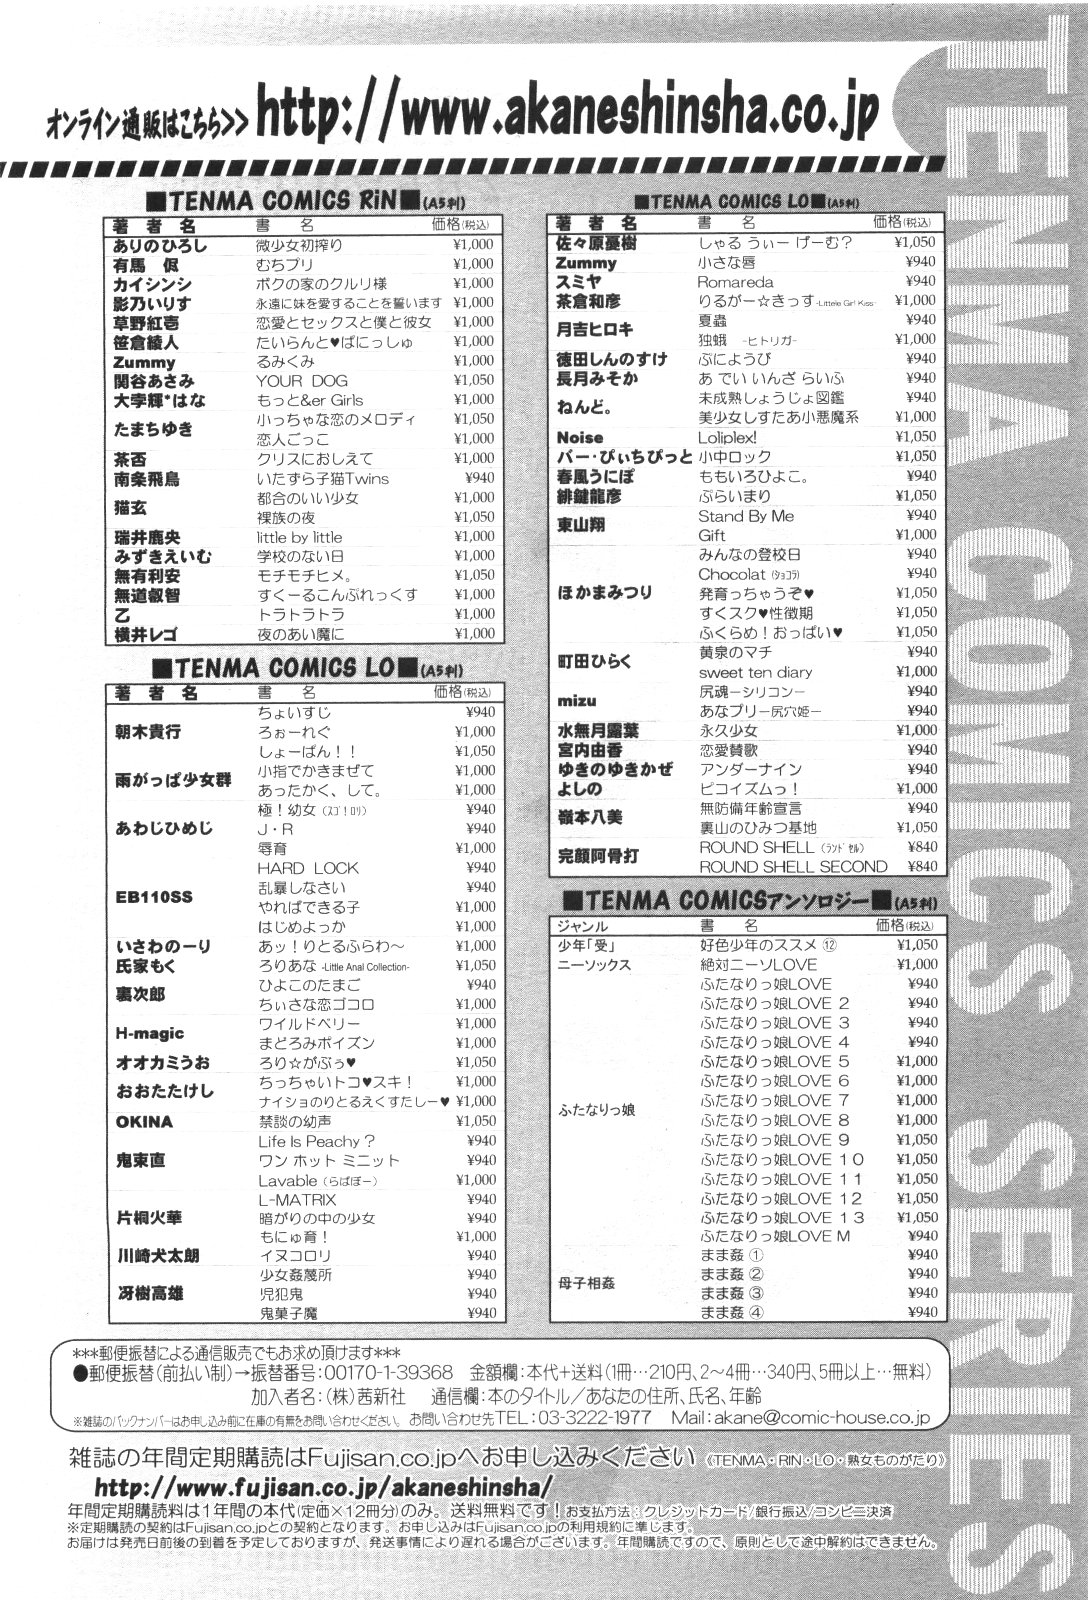 COMIC LO 2010年1月号 Vol.70